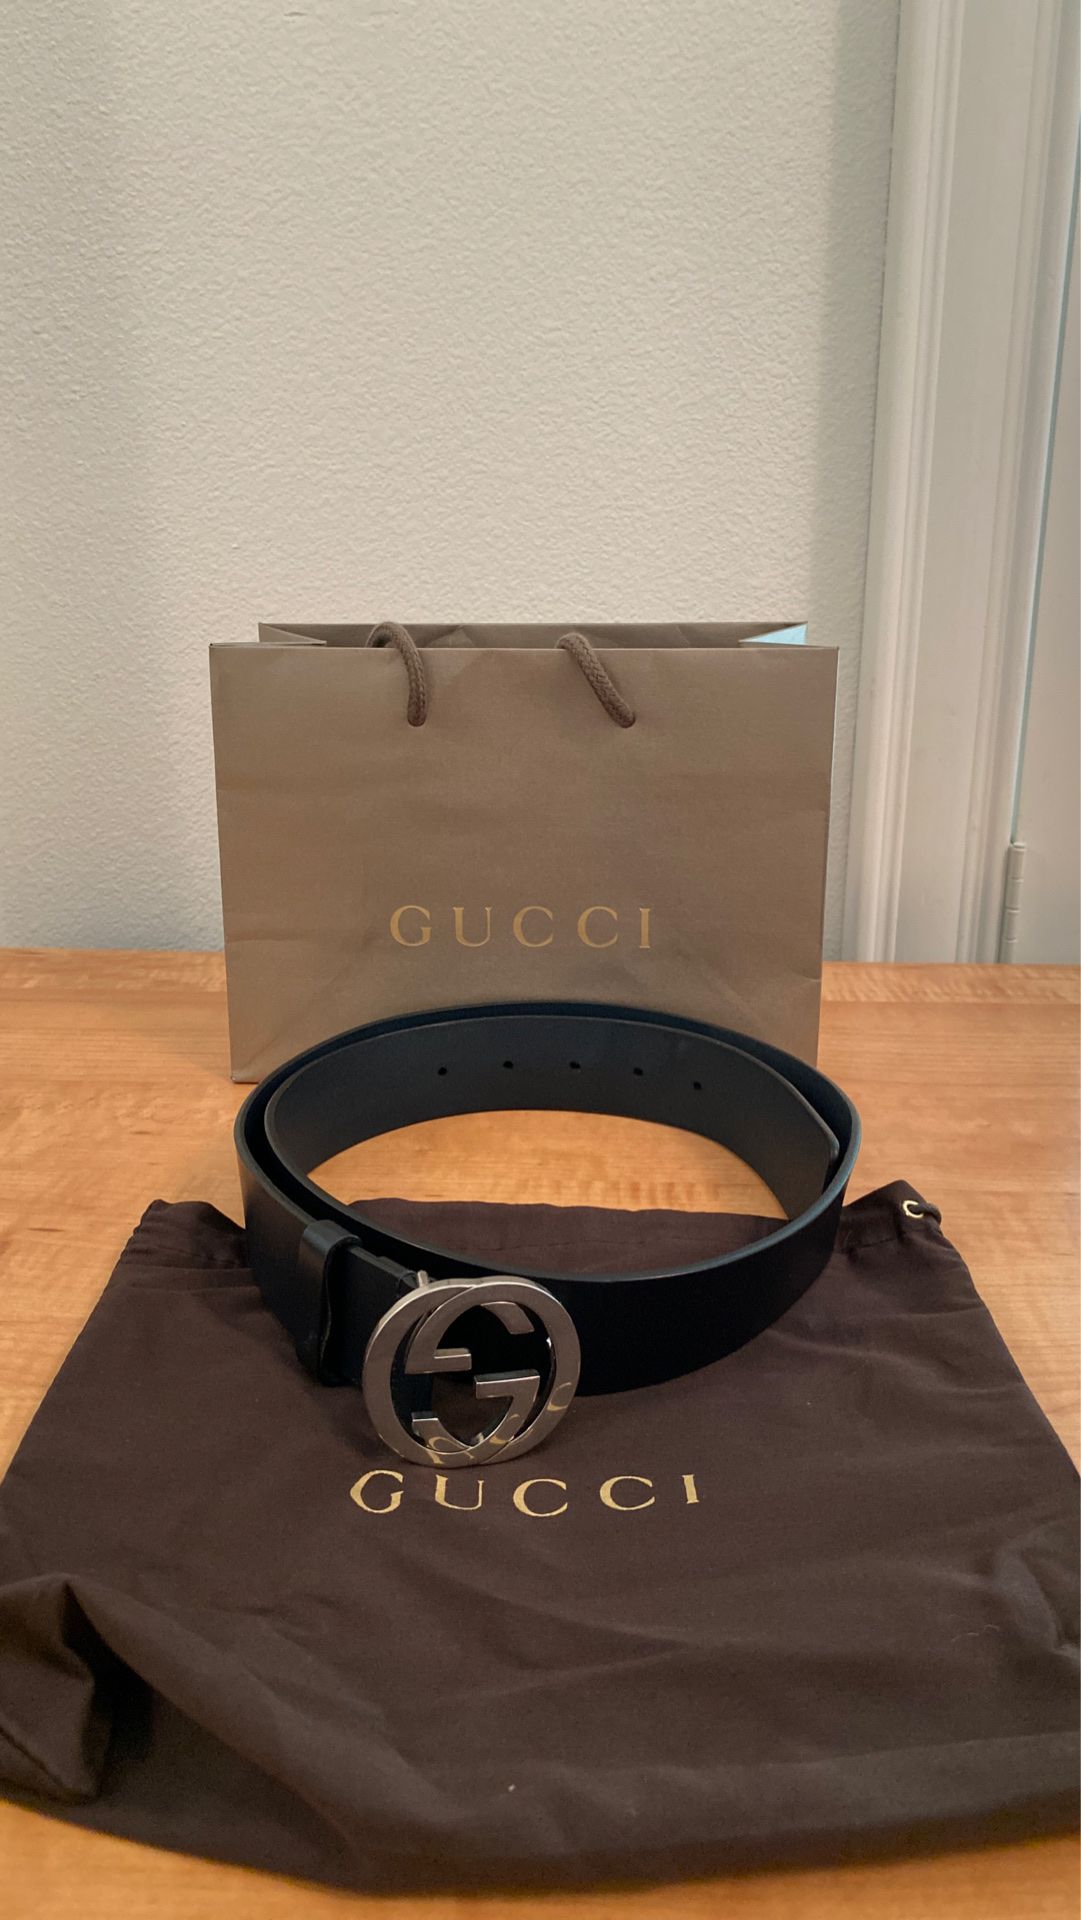 Gucci belt size 90 dark blue